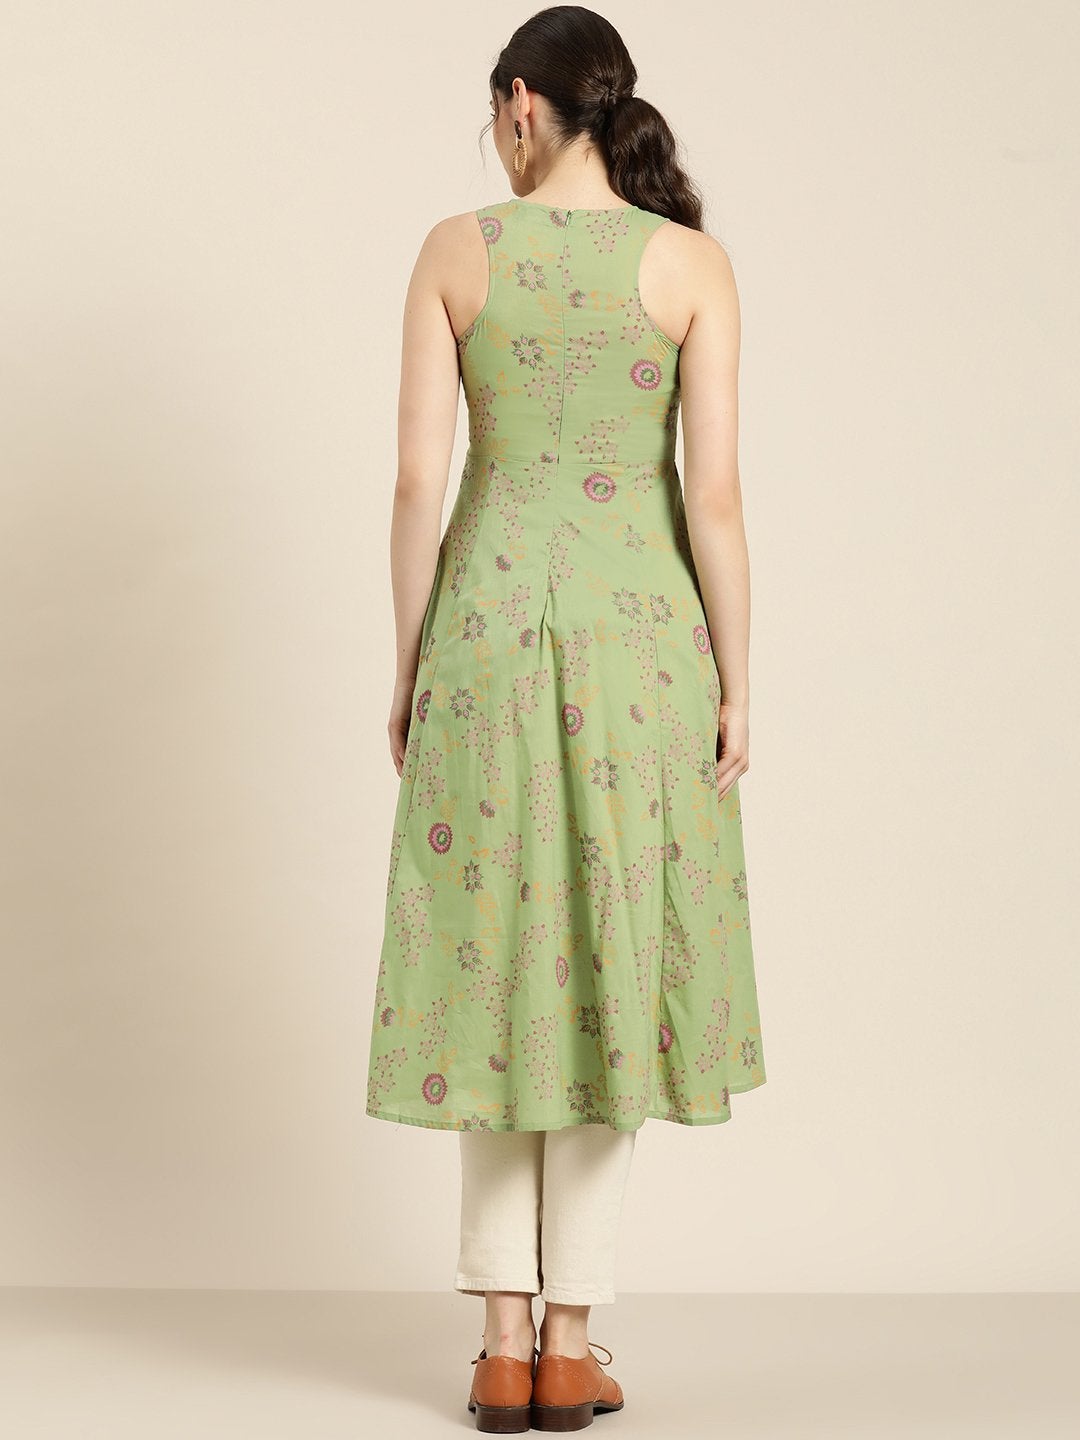 Women's Green Printed Sleeveless Kurta - SHAE